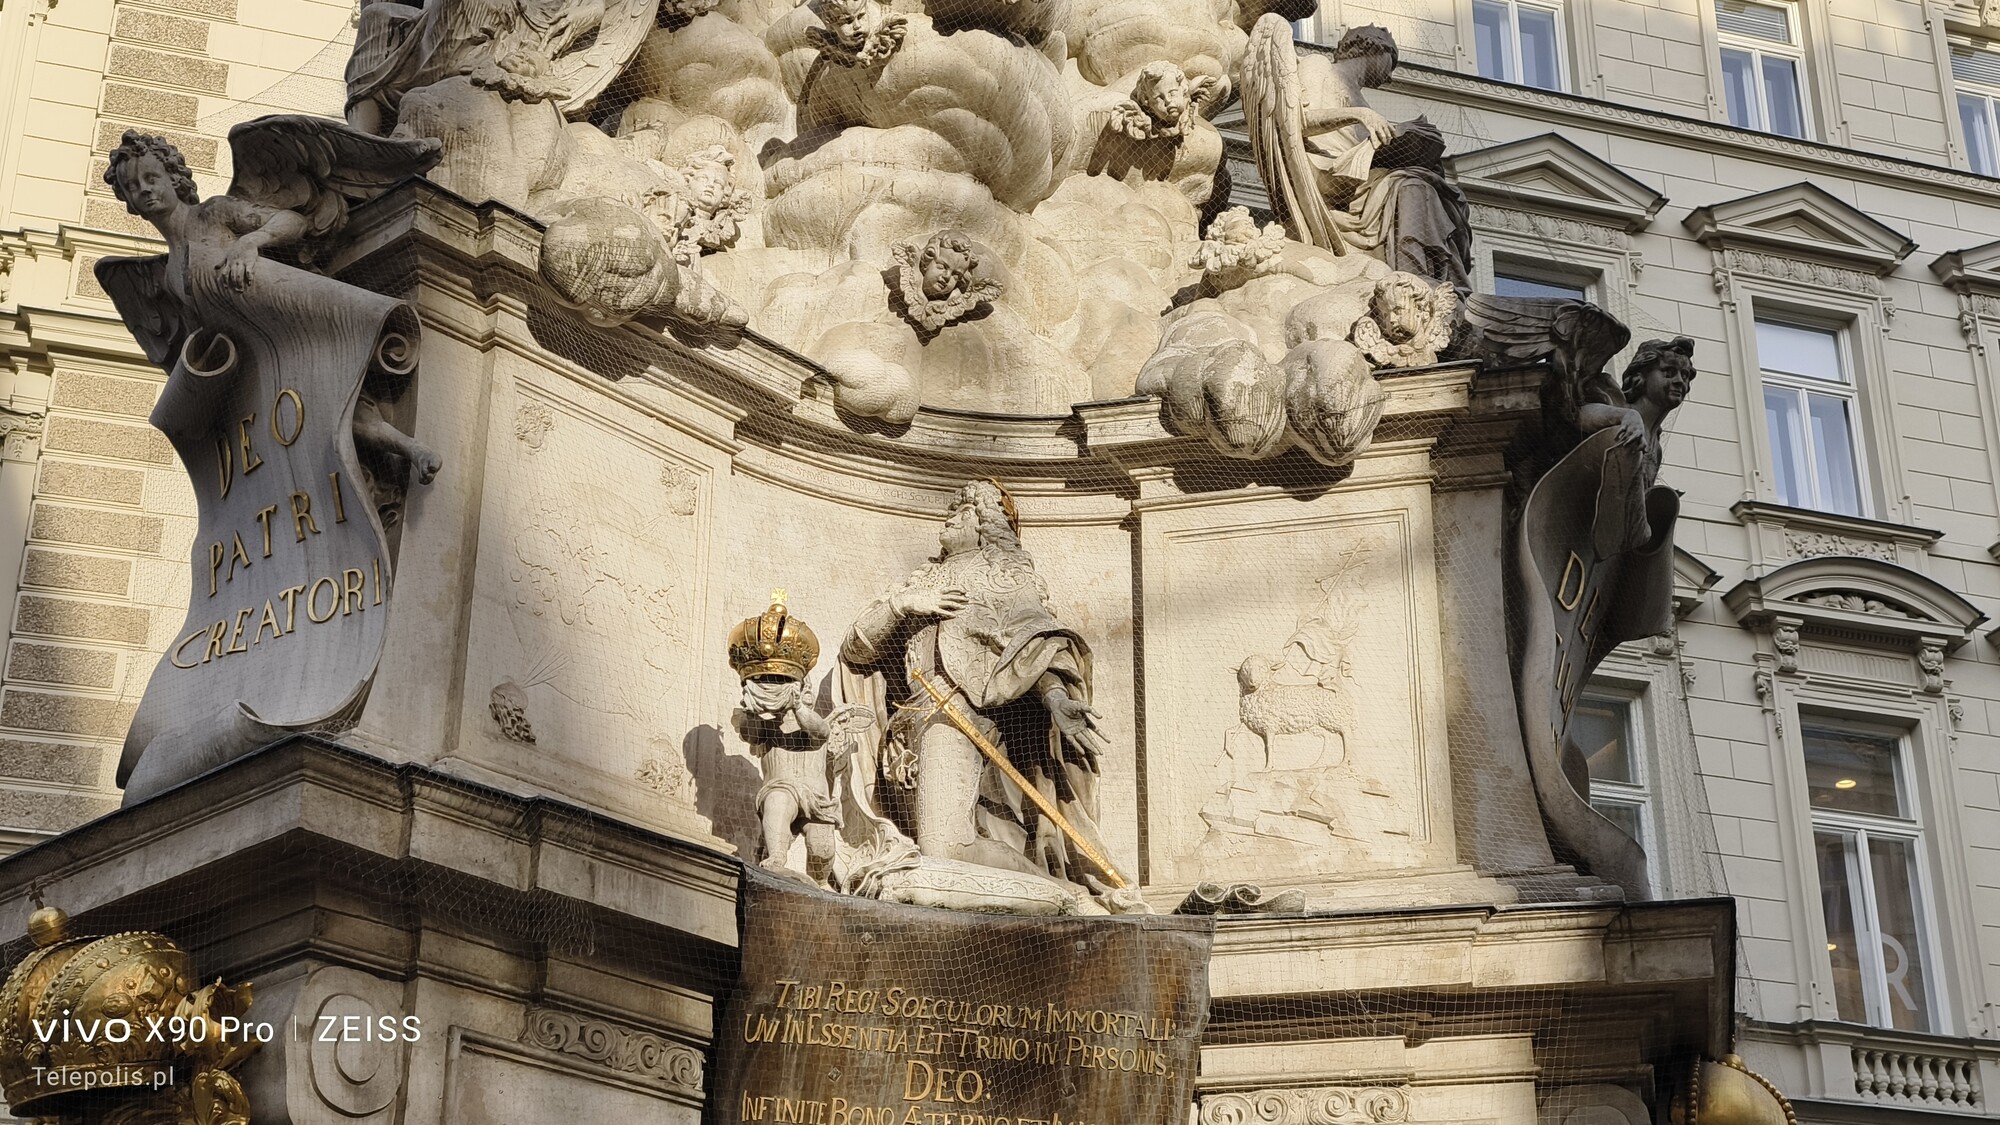 zdjęcie pomnika jednego z Habsburgów w trybie Kolory Zeiss